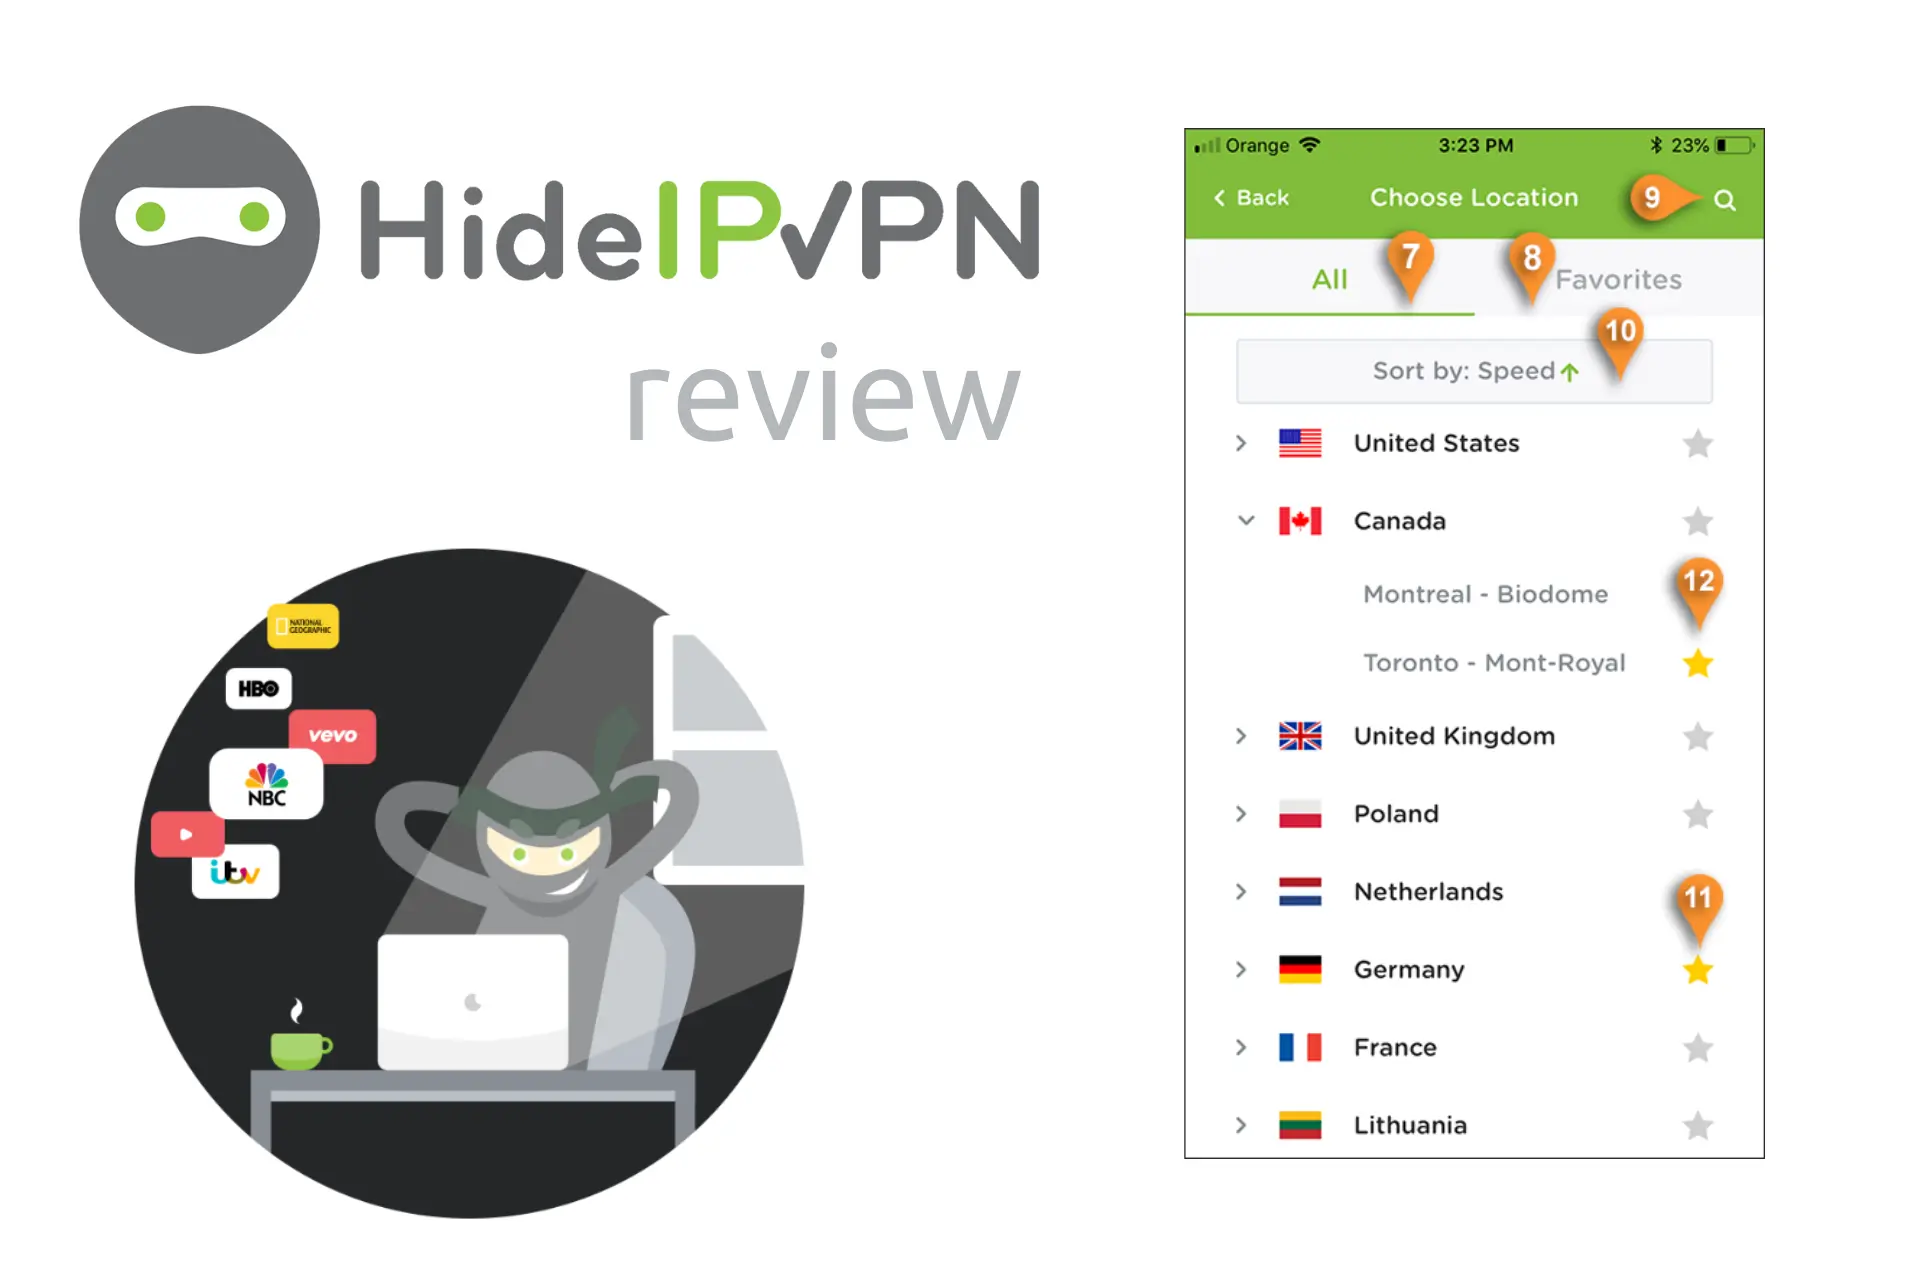 hideipvpn review